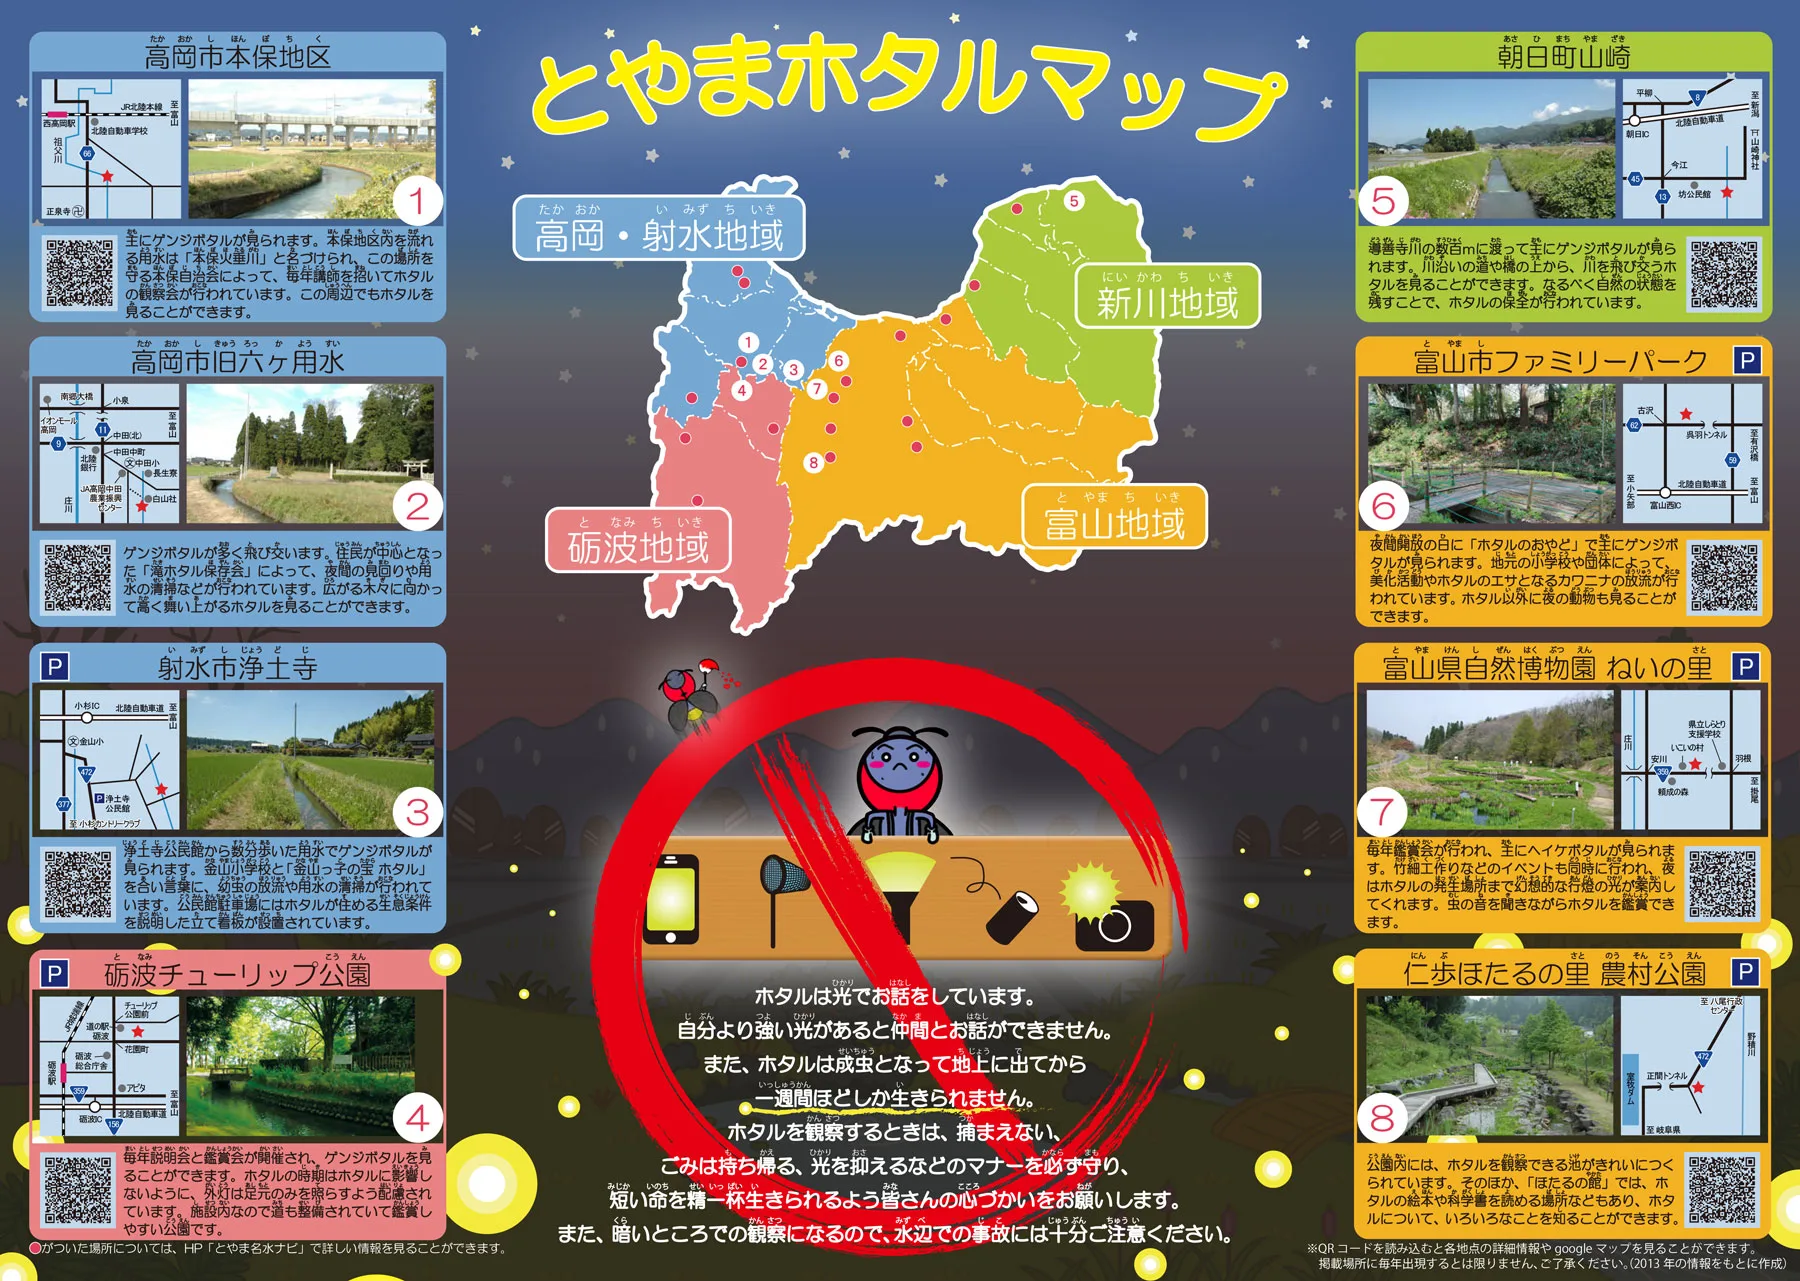 富山のホタル21 蛍の時期とオススメ名所8選 注意点あり 富山暮らし